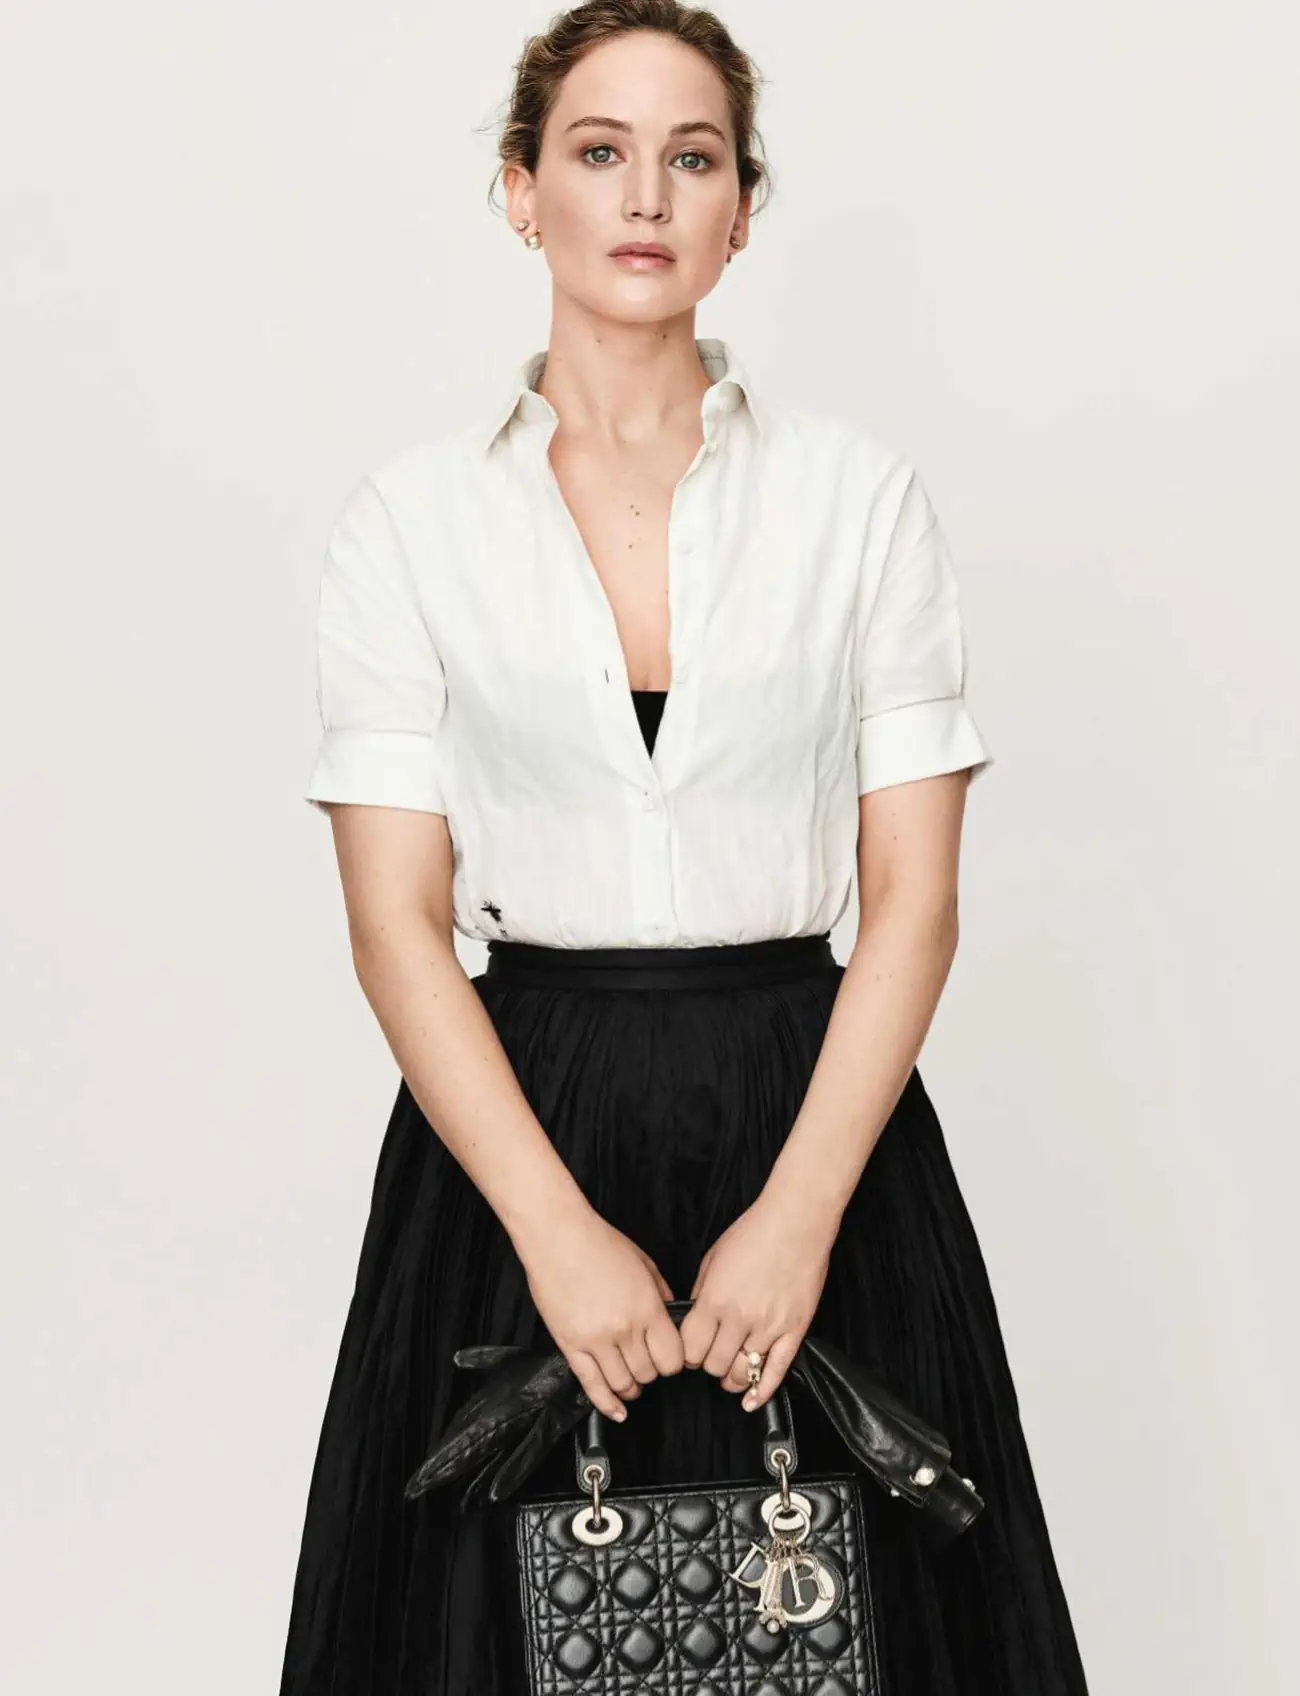 Jennifer Lawrence in Dior on Elle France June 22nd, 2023 by Daniel Jackson